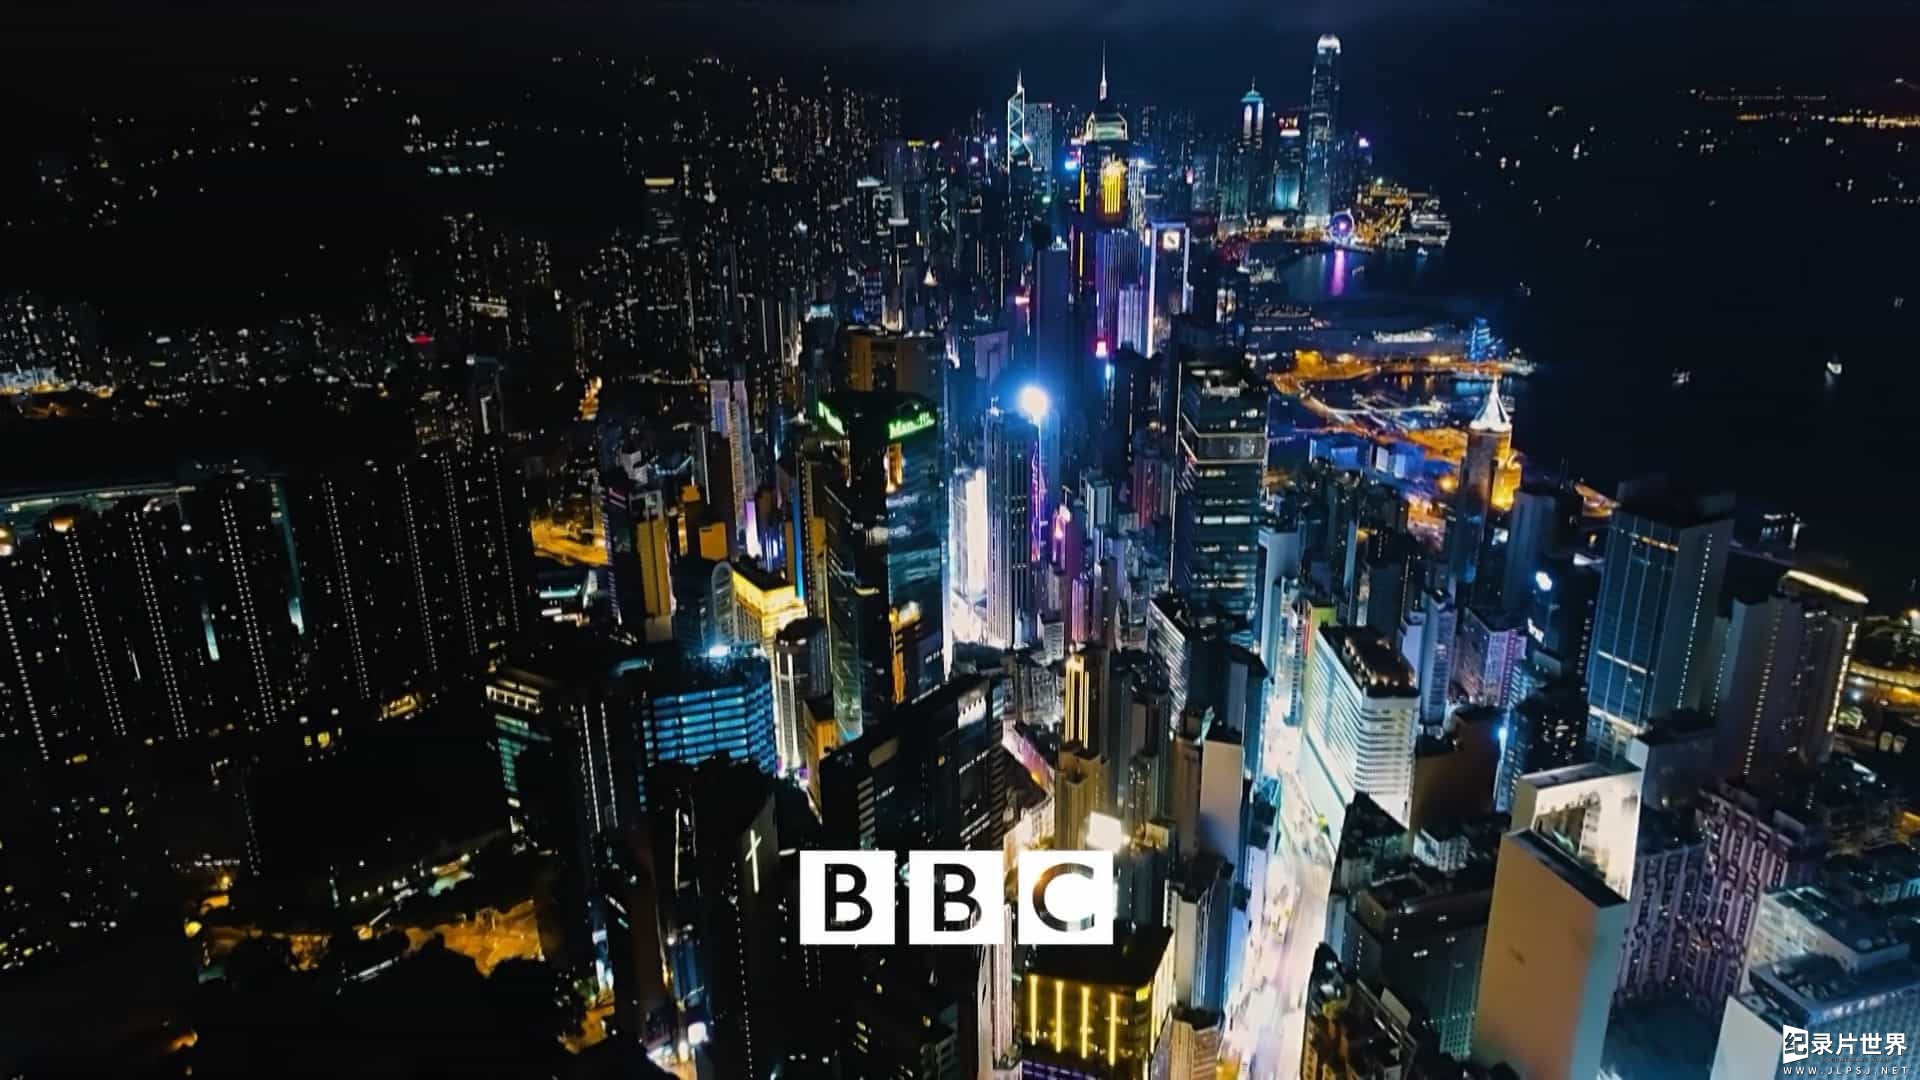 BBC纪录片《野性都市 Wild Metropolis 2018》全3集